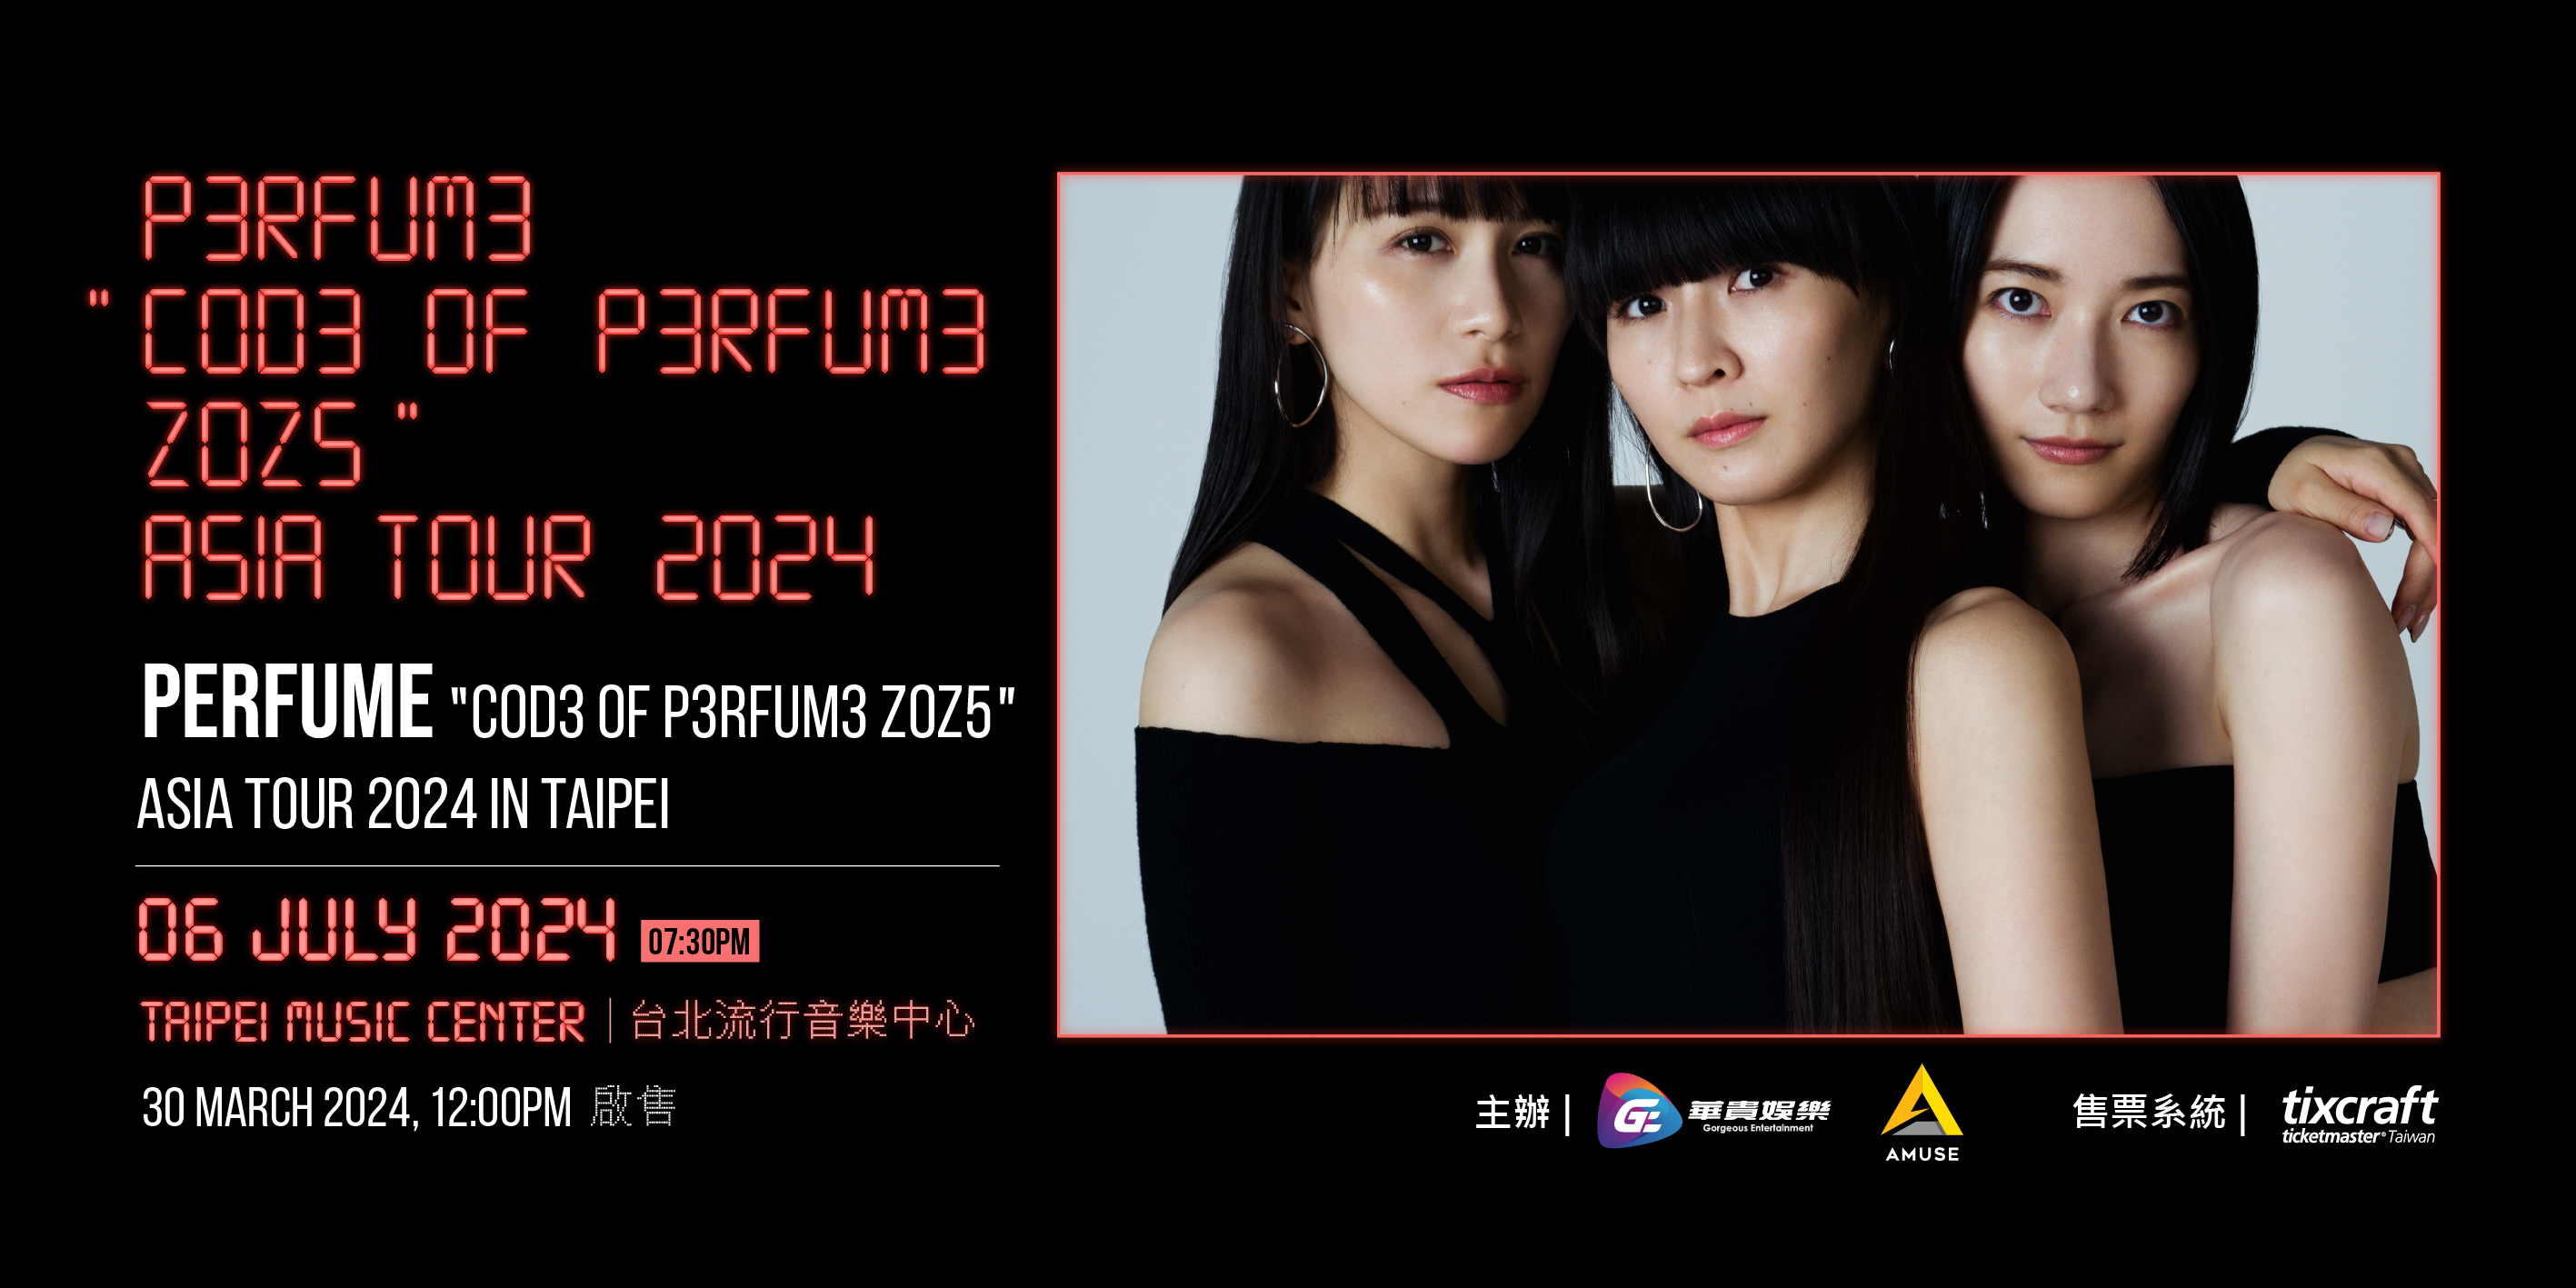 Perfume COD3 OF P3RFUM3 ZOZ5 Asia Tour 2024